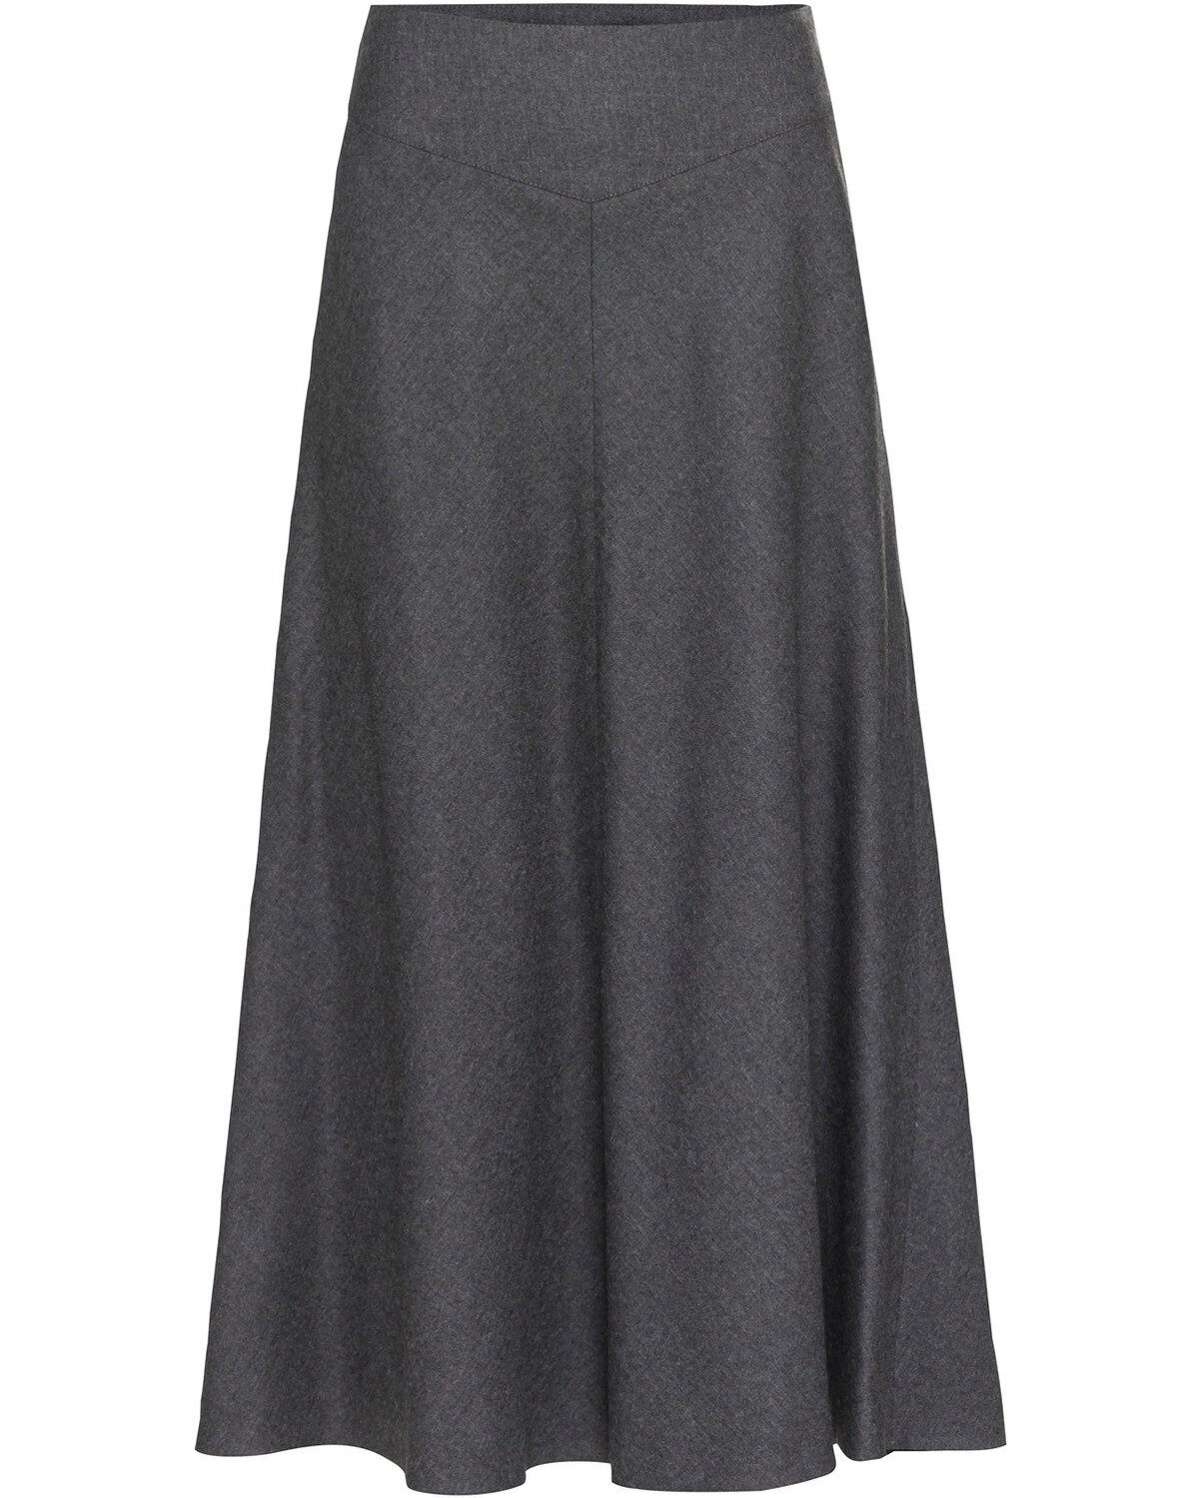 Традиционная юбка, длинная юбка-колокол.